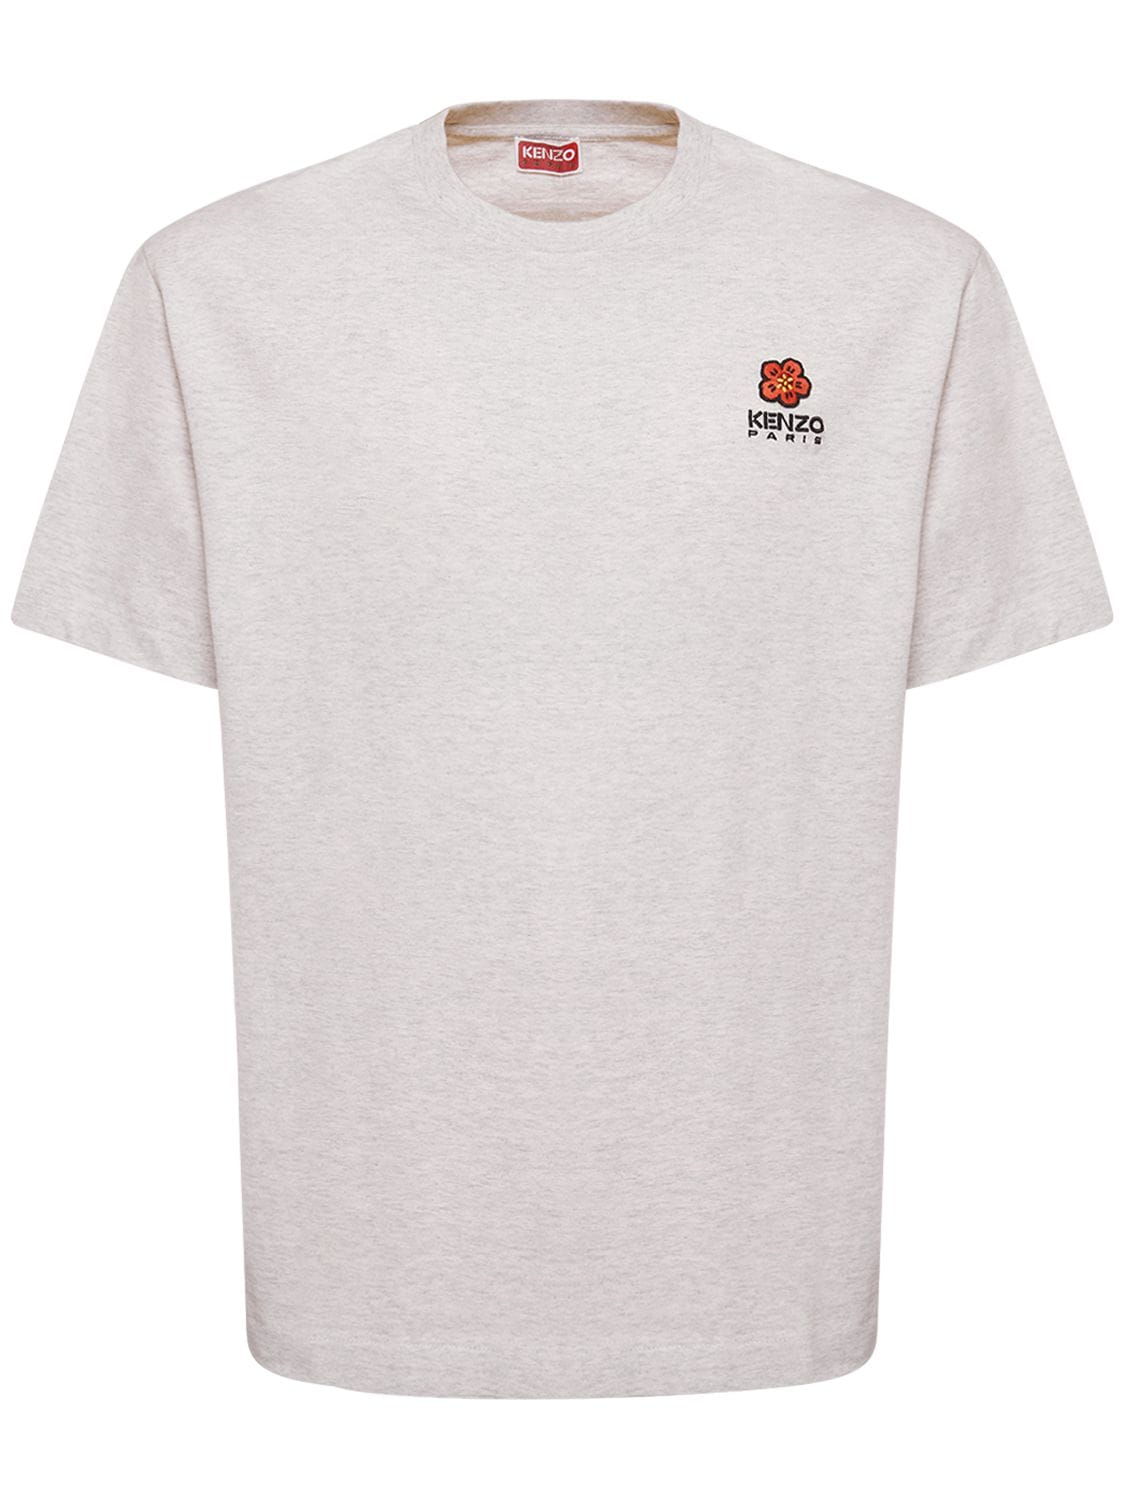 KENZO PARIS Boke Logo Cotton Jersey T-shirt